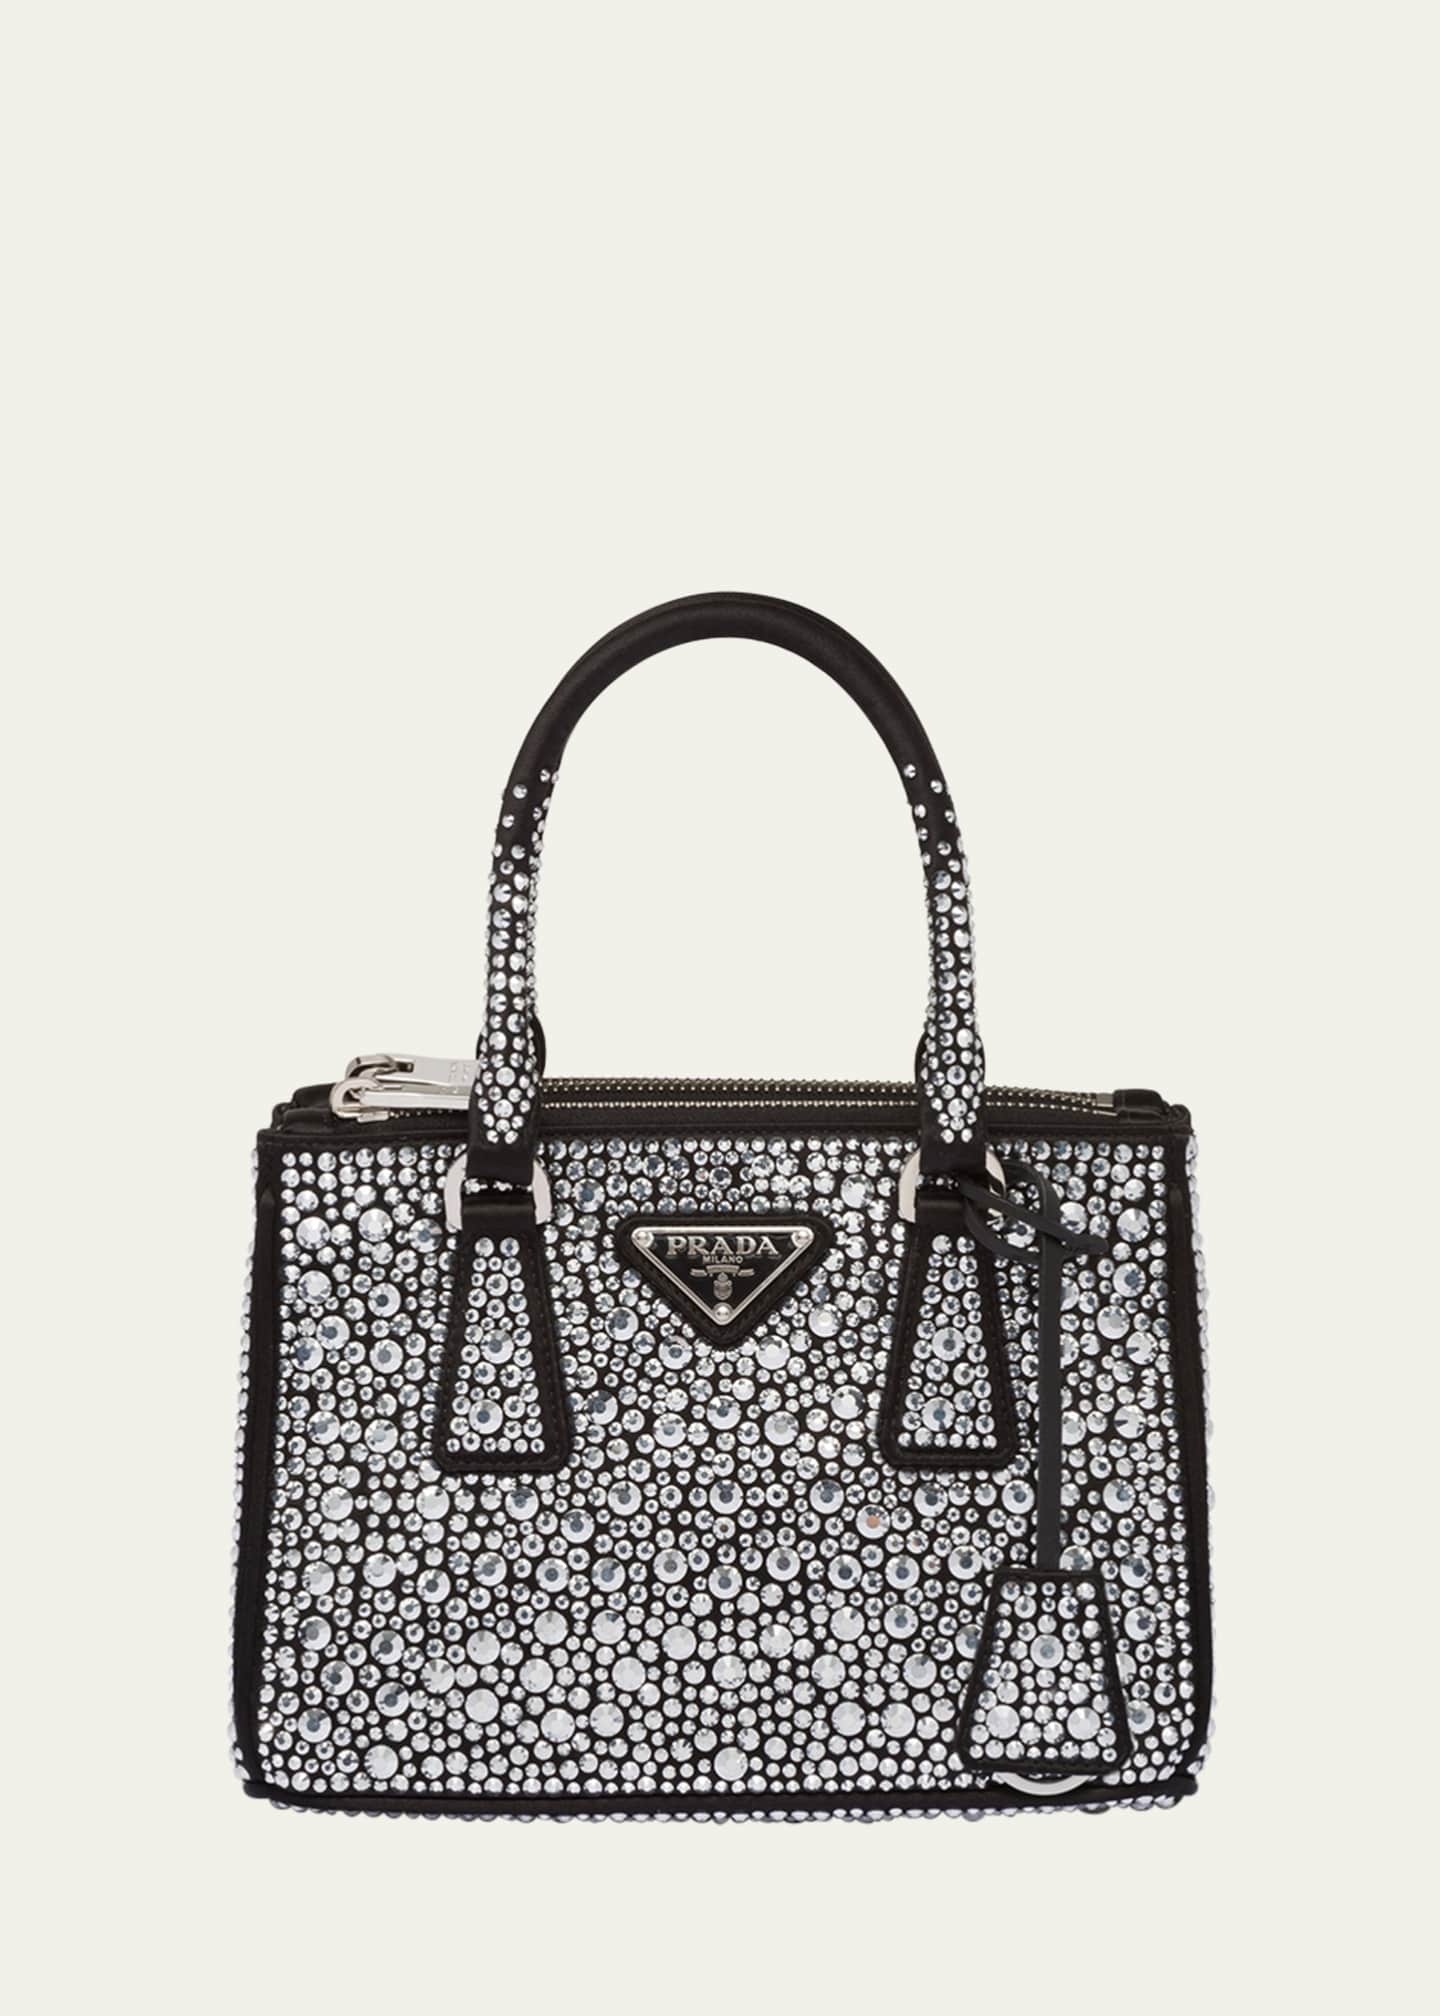 The Prada Galleria Handbag Collection